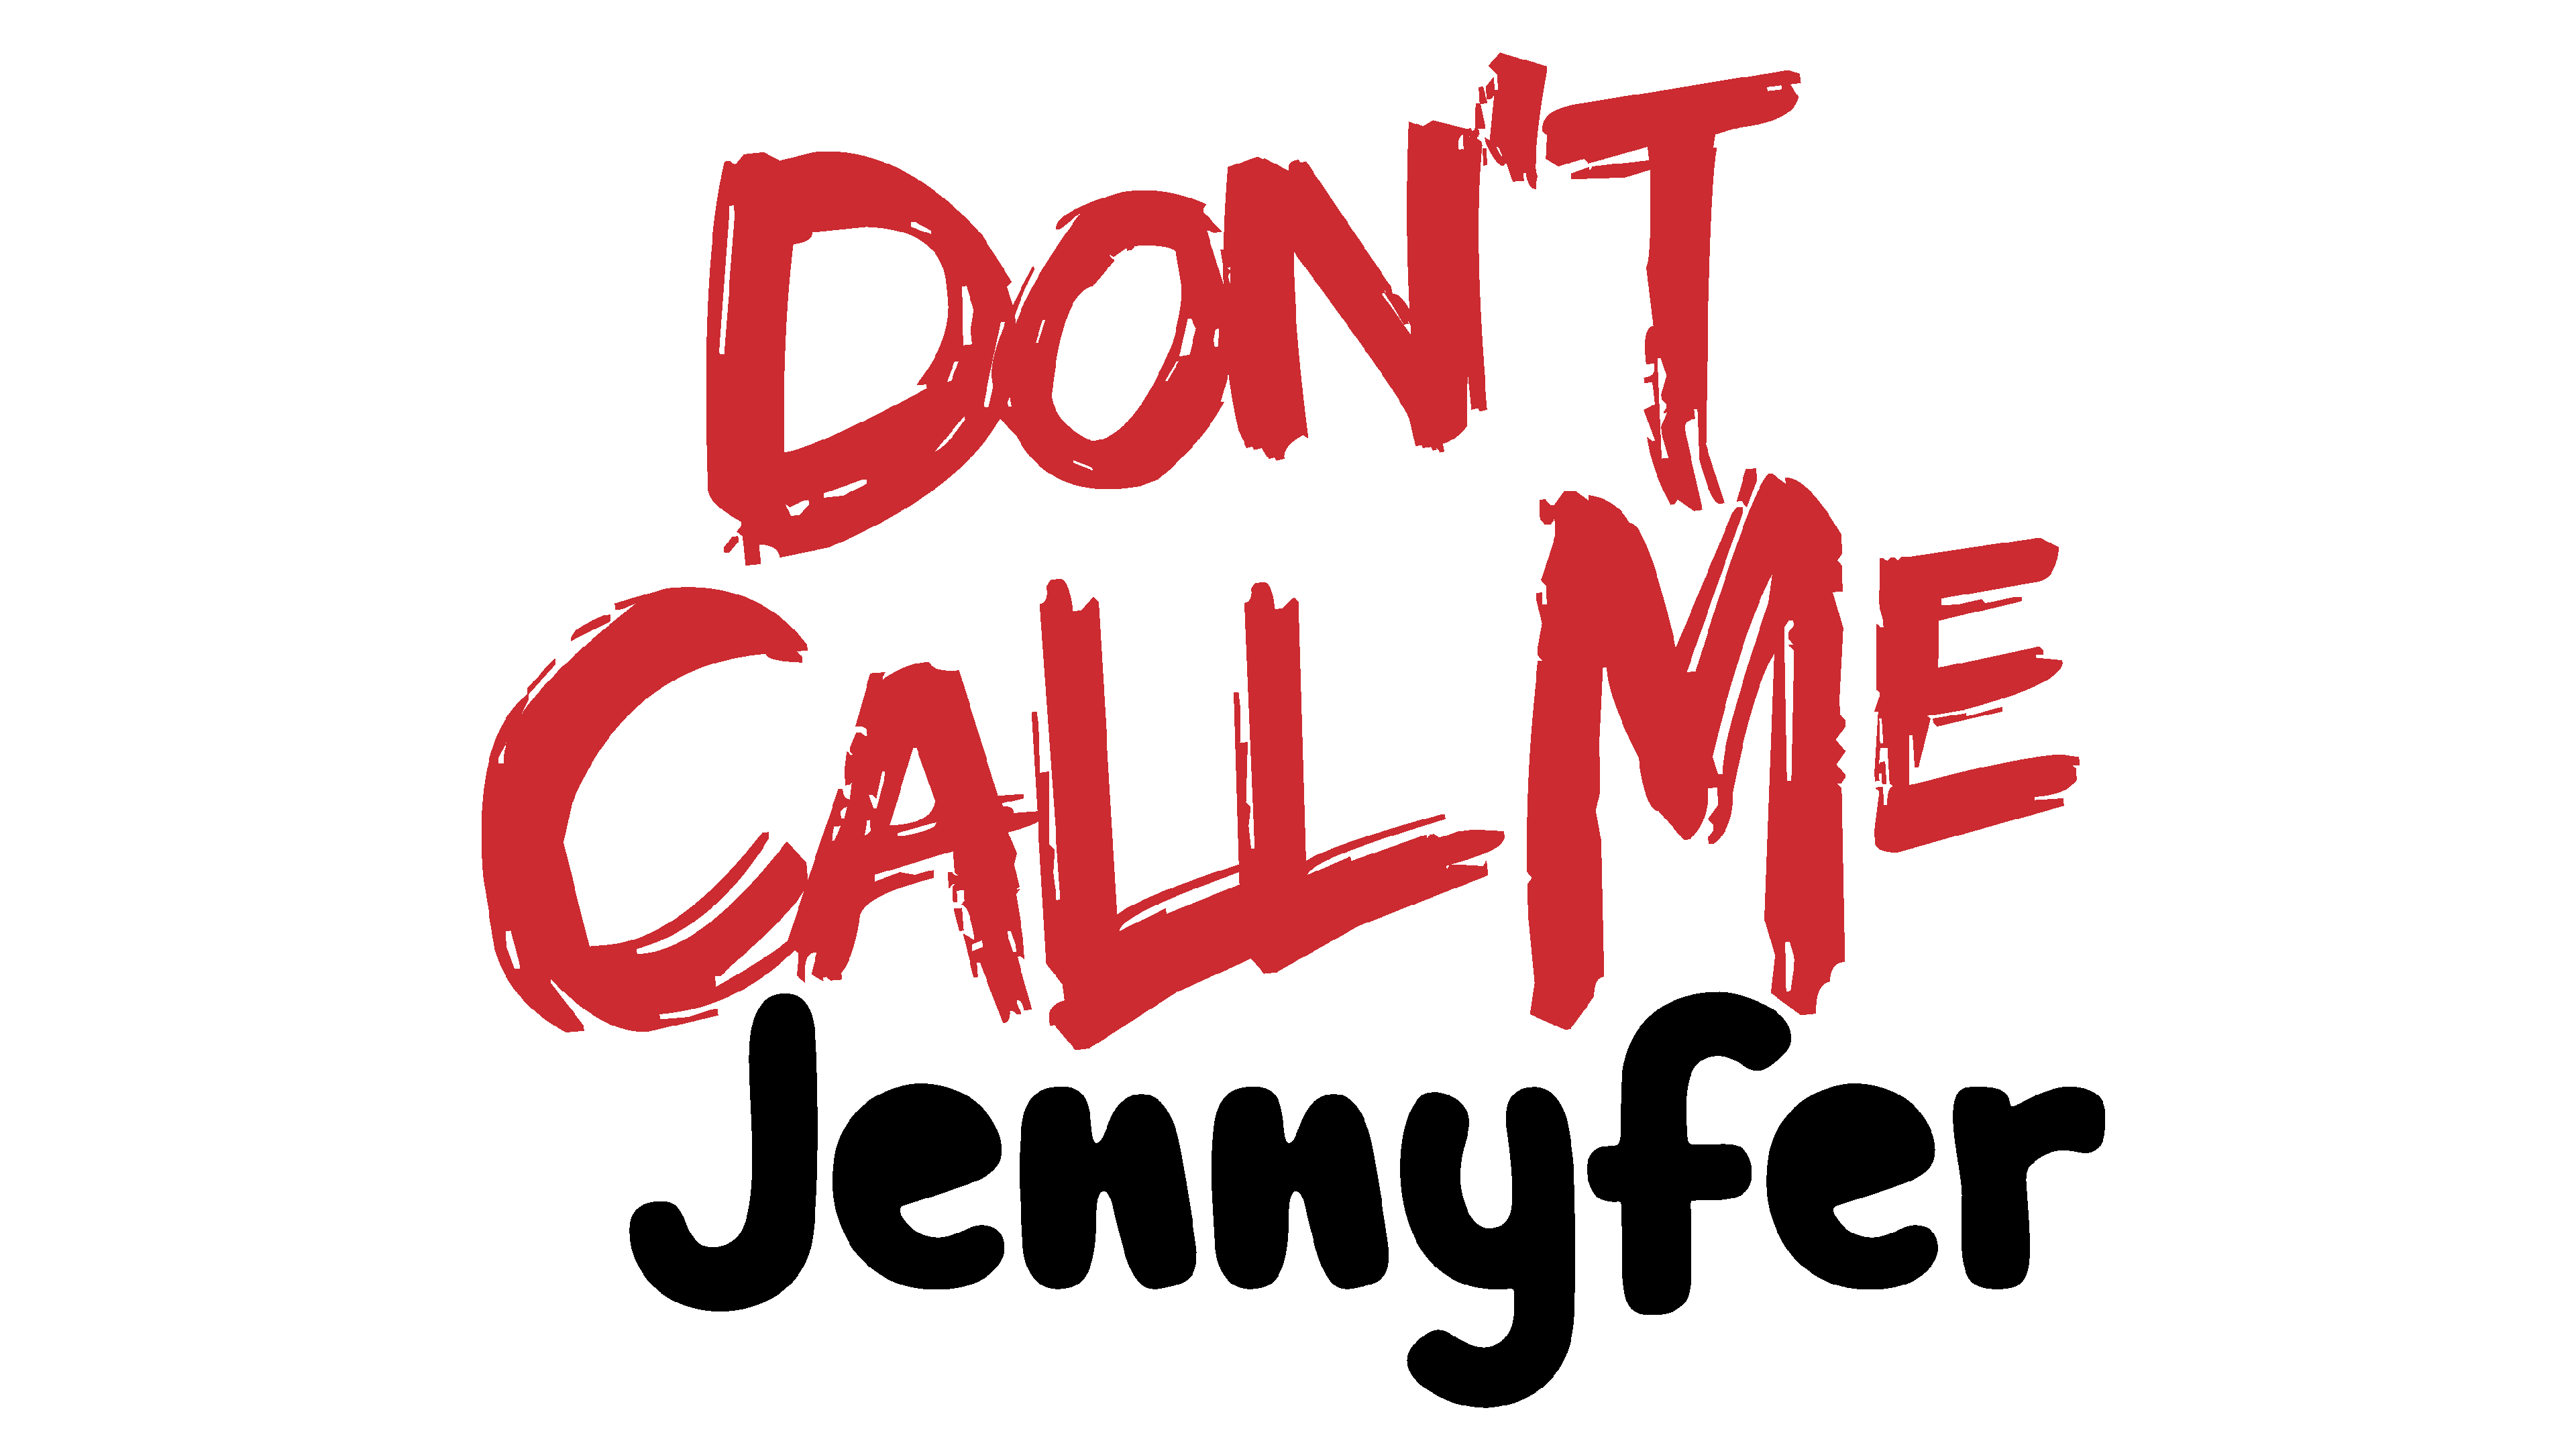 Колл ми. Jennyfer. Донт колл ми. Don't Call me Jennyfer. Магазин don't Call me.